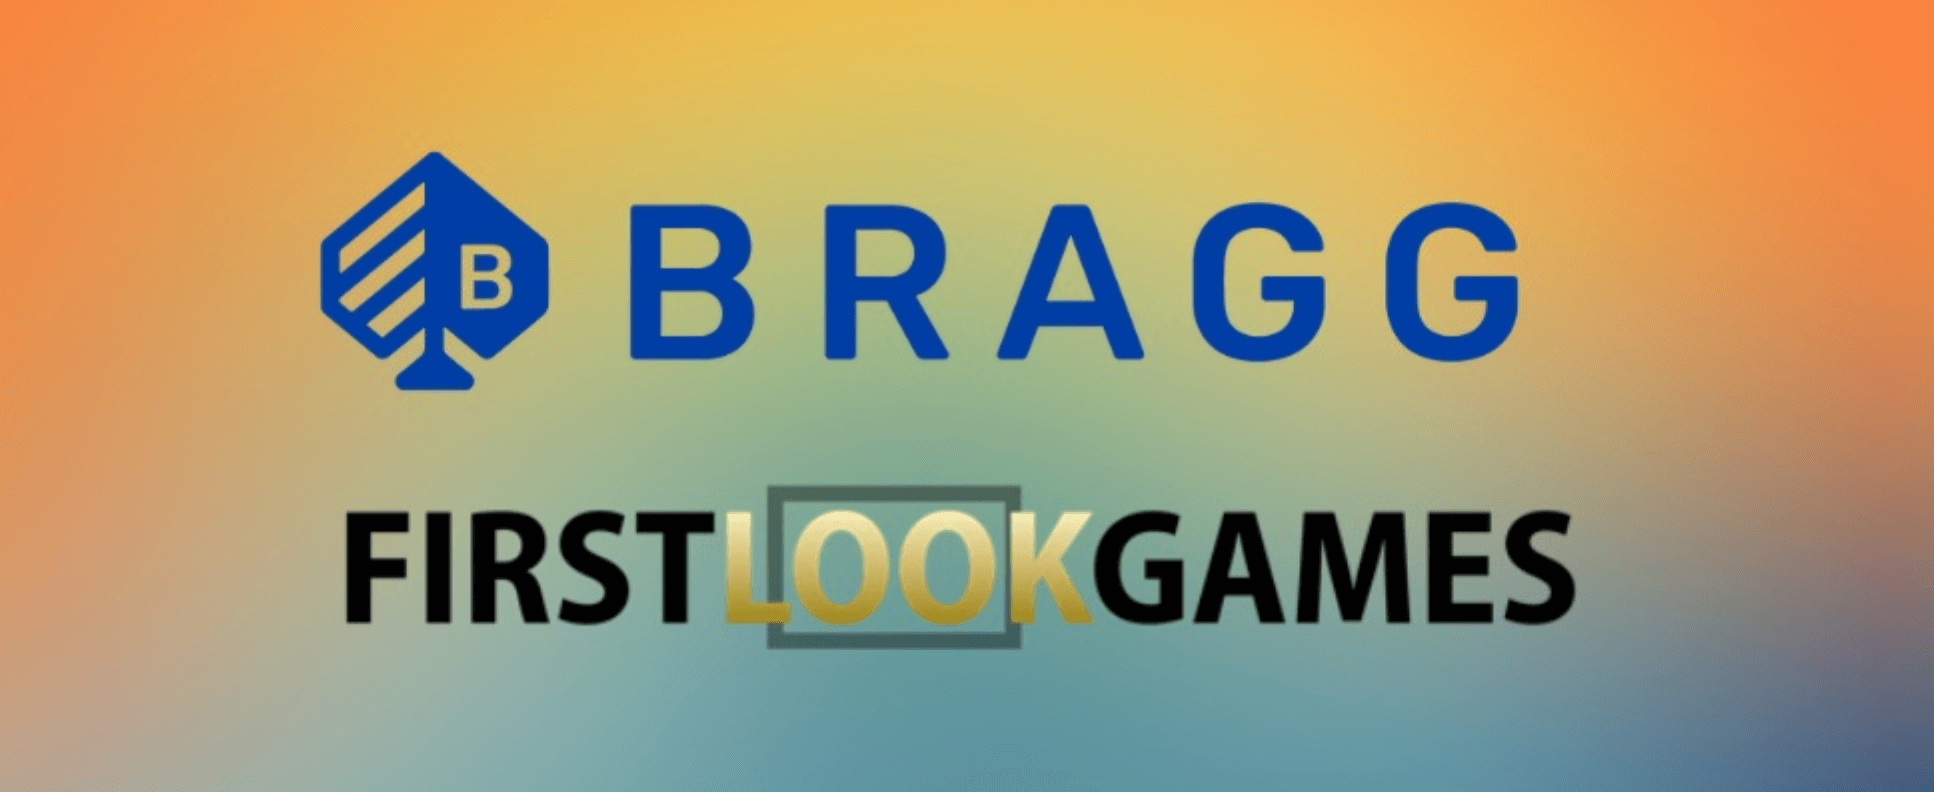 Bragg Gaming kí kết với First Look Games